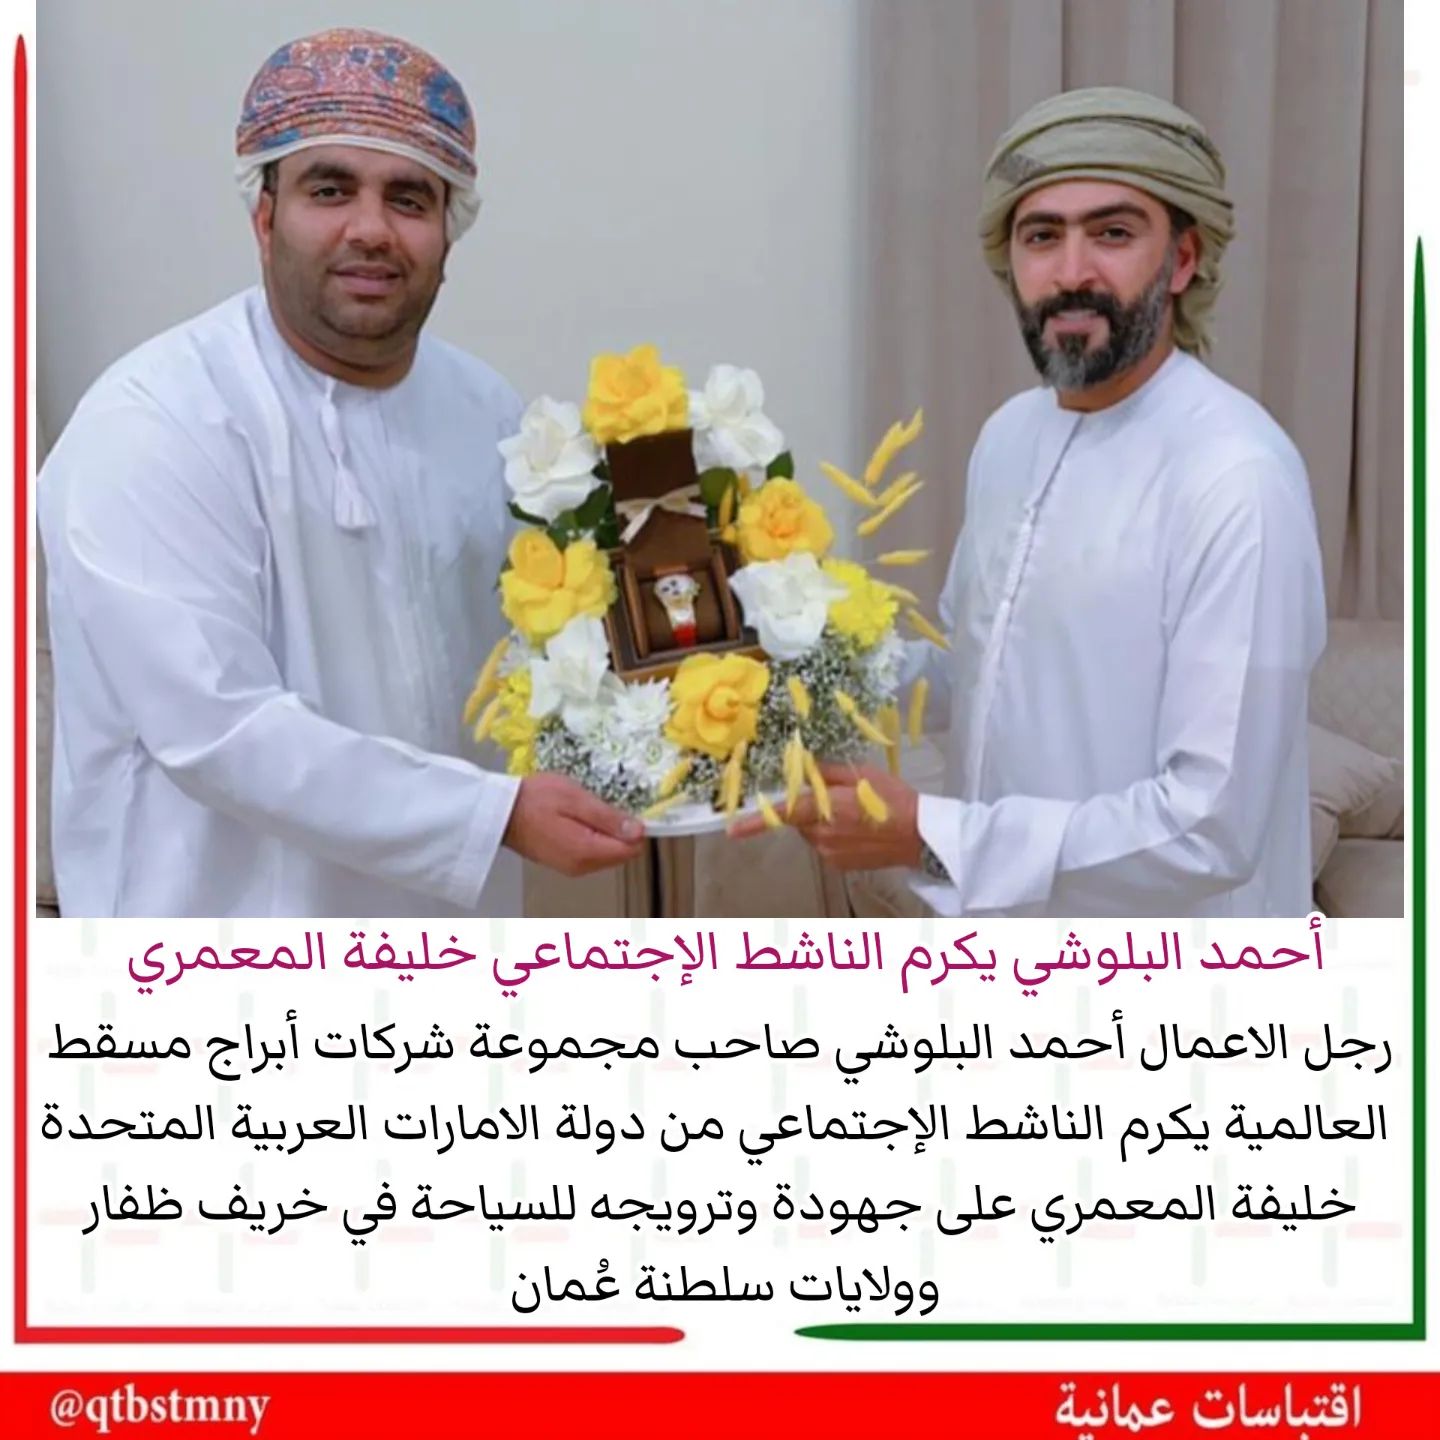 لحظة تكريم رجل الأعمال أحمد البلوشي للناشط الاجتماعي الإماراتي خليفة المعمري